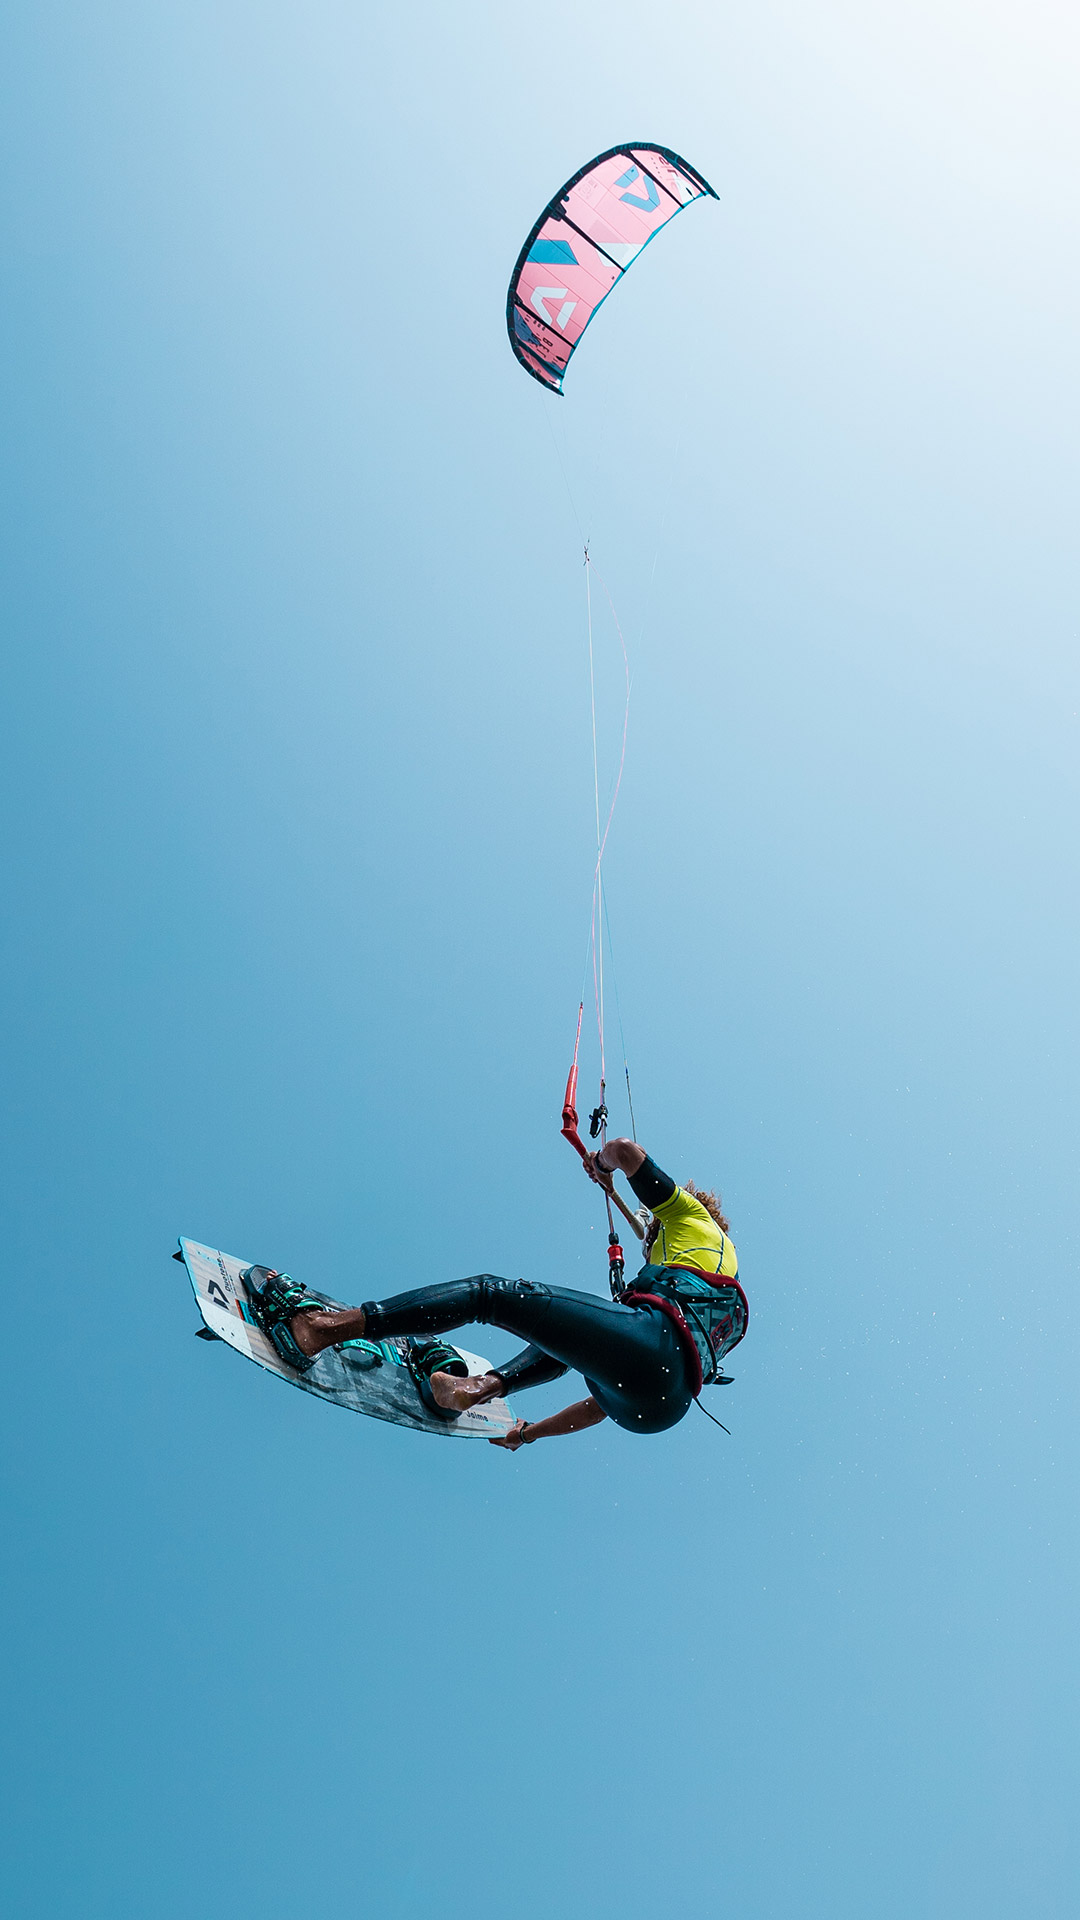 Un kitesurfeur volant vers le ciel avec son cerf-volant